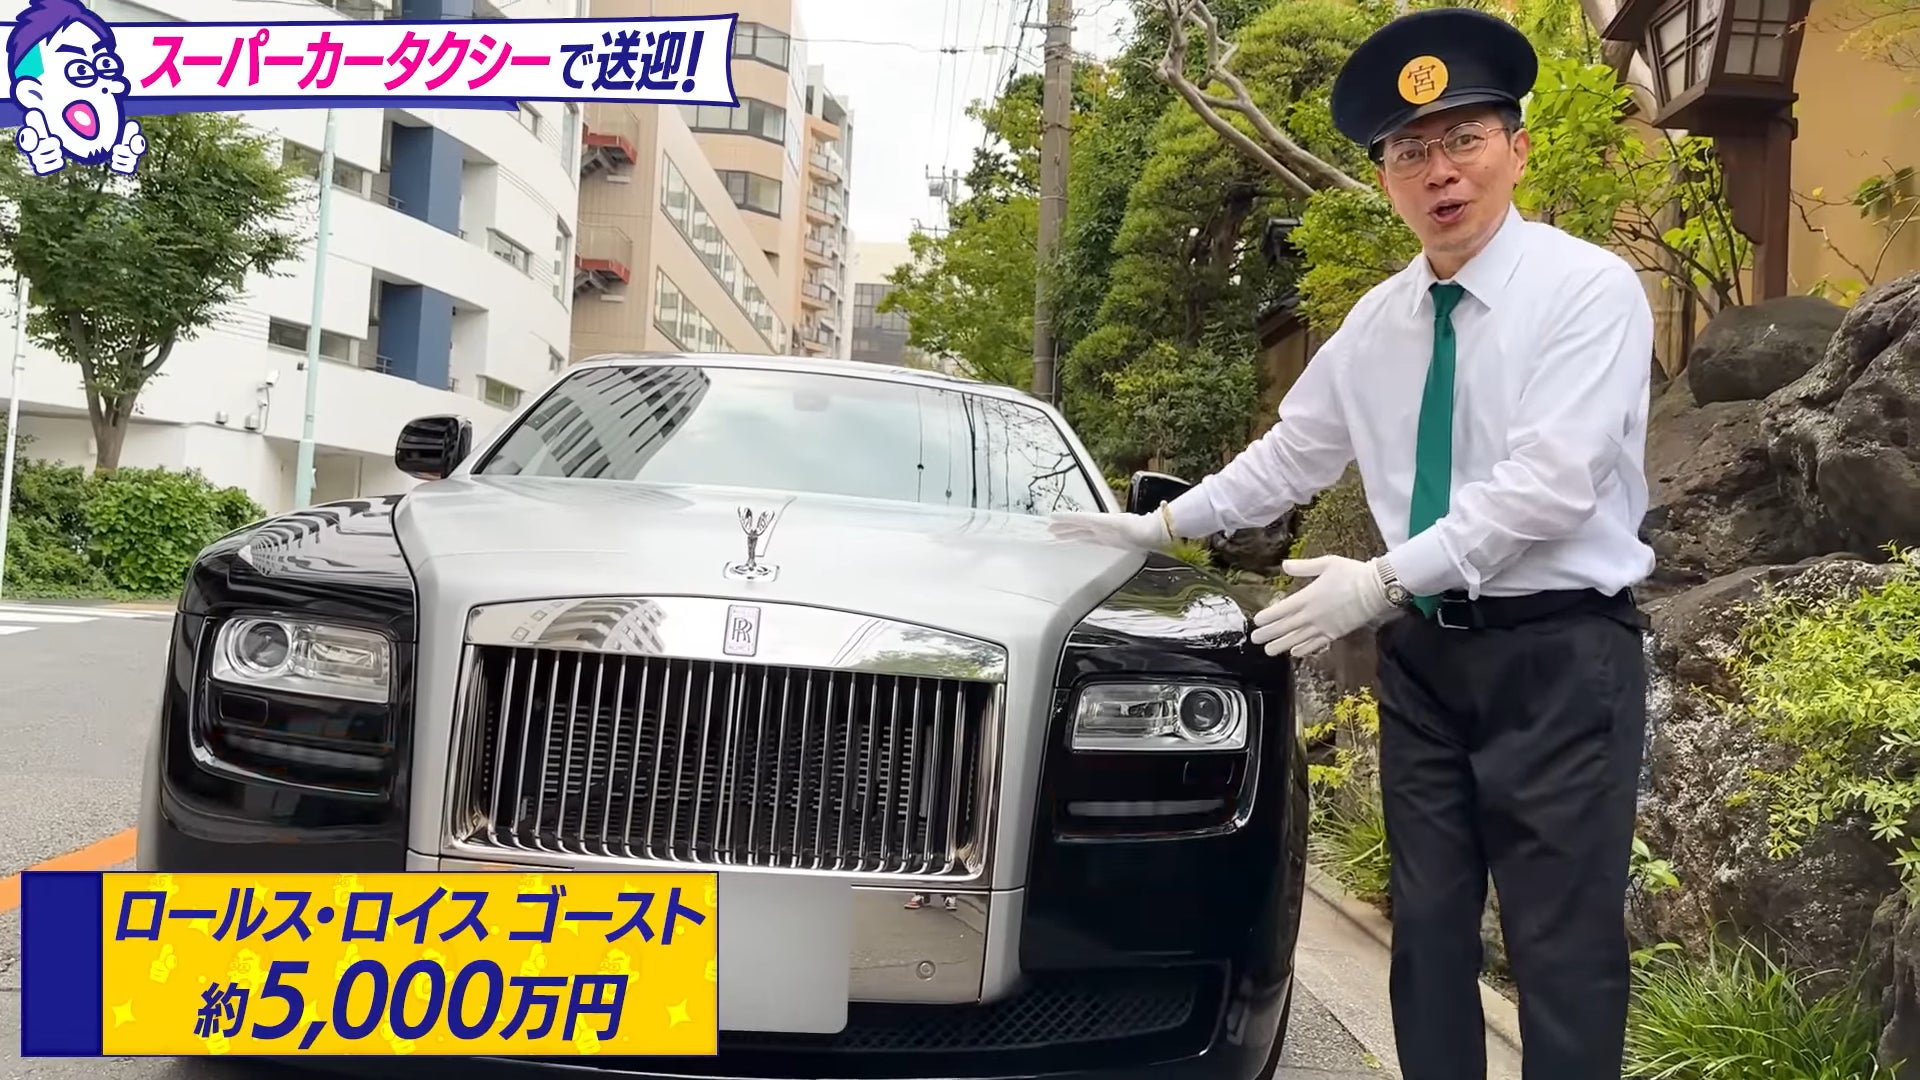 宮迫博之さんの人気YouTube企画「宮迫タクシー」の撮影協力記念として、「ロールス・ロイス GHOST」をお得にレンタルできる連泊キャンペーンを実施のサブ画像2